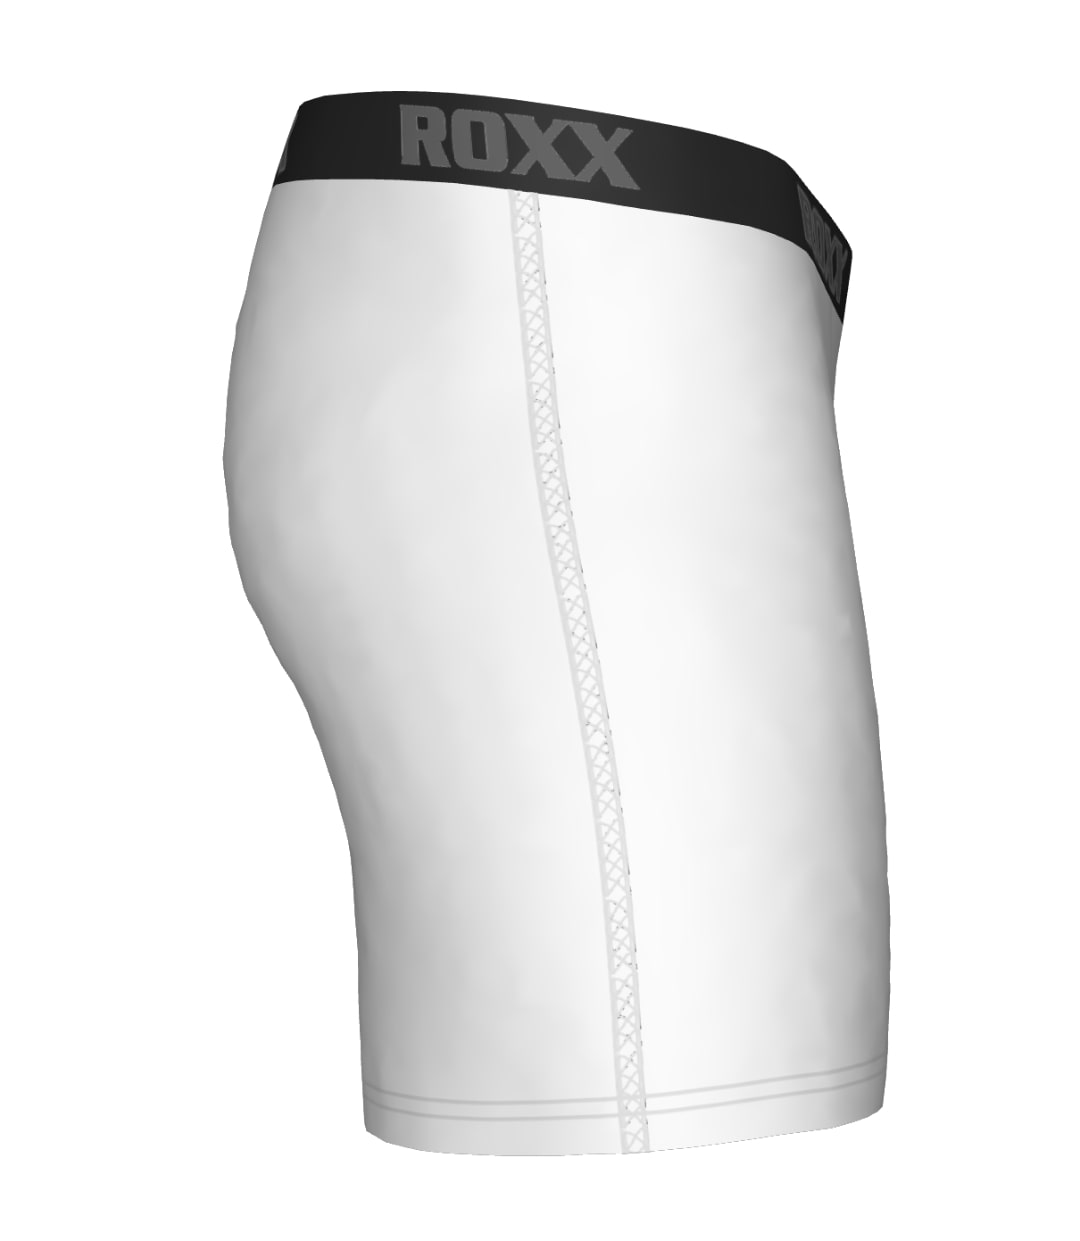 ROXX Mens Compression Boxer Shorts Trunks Briefs Pants, Base Layer